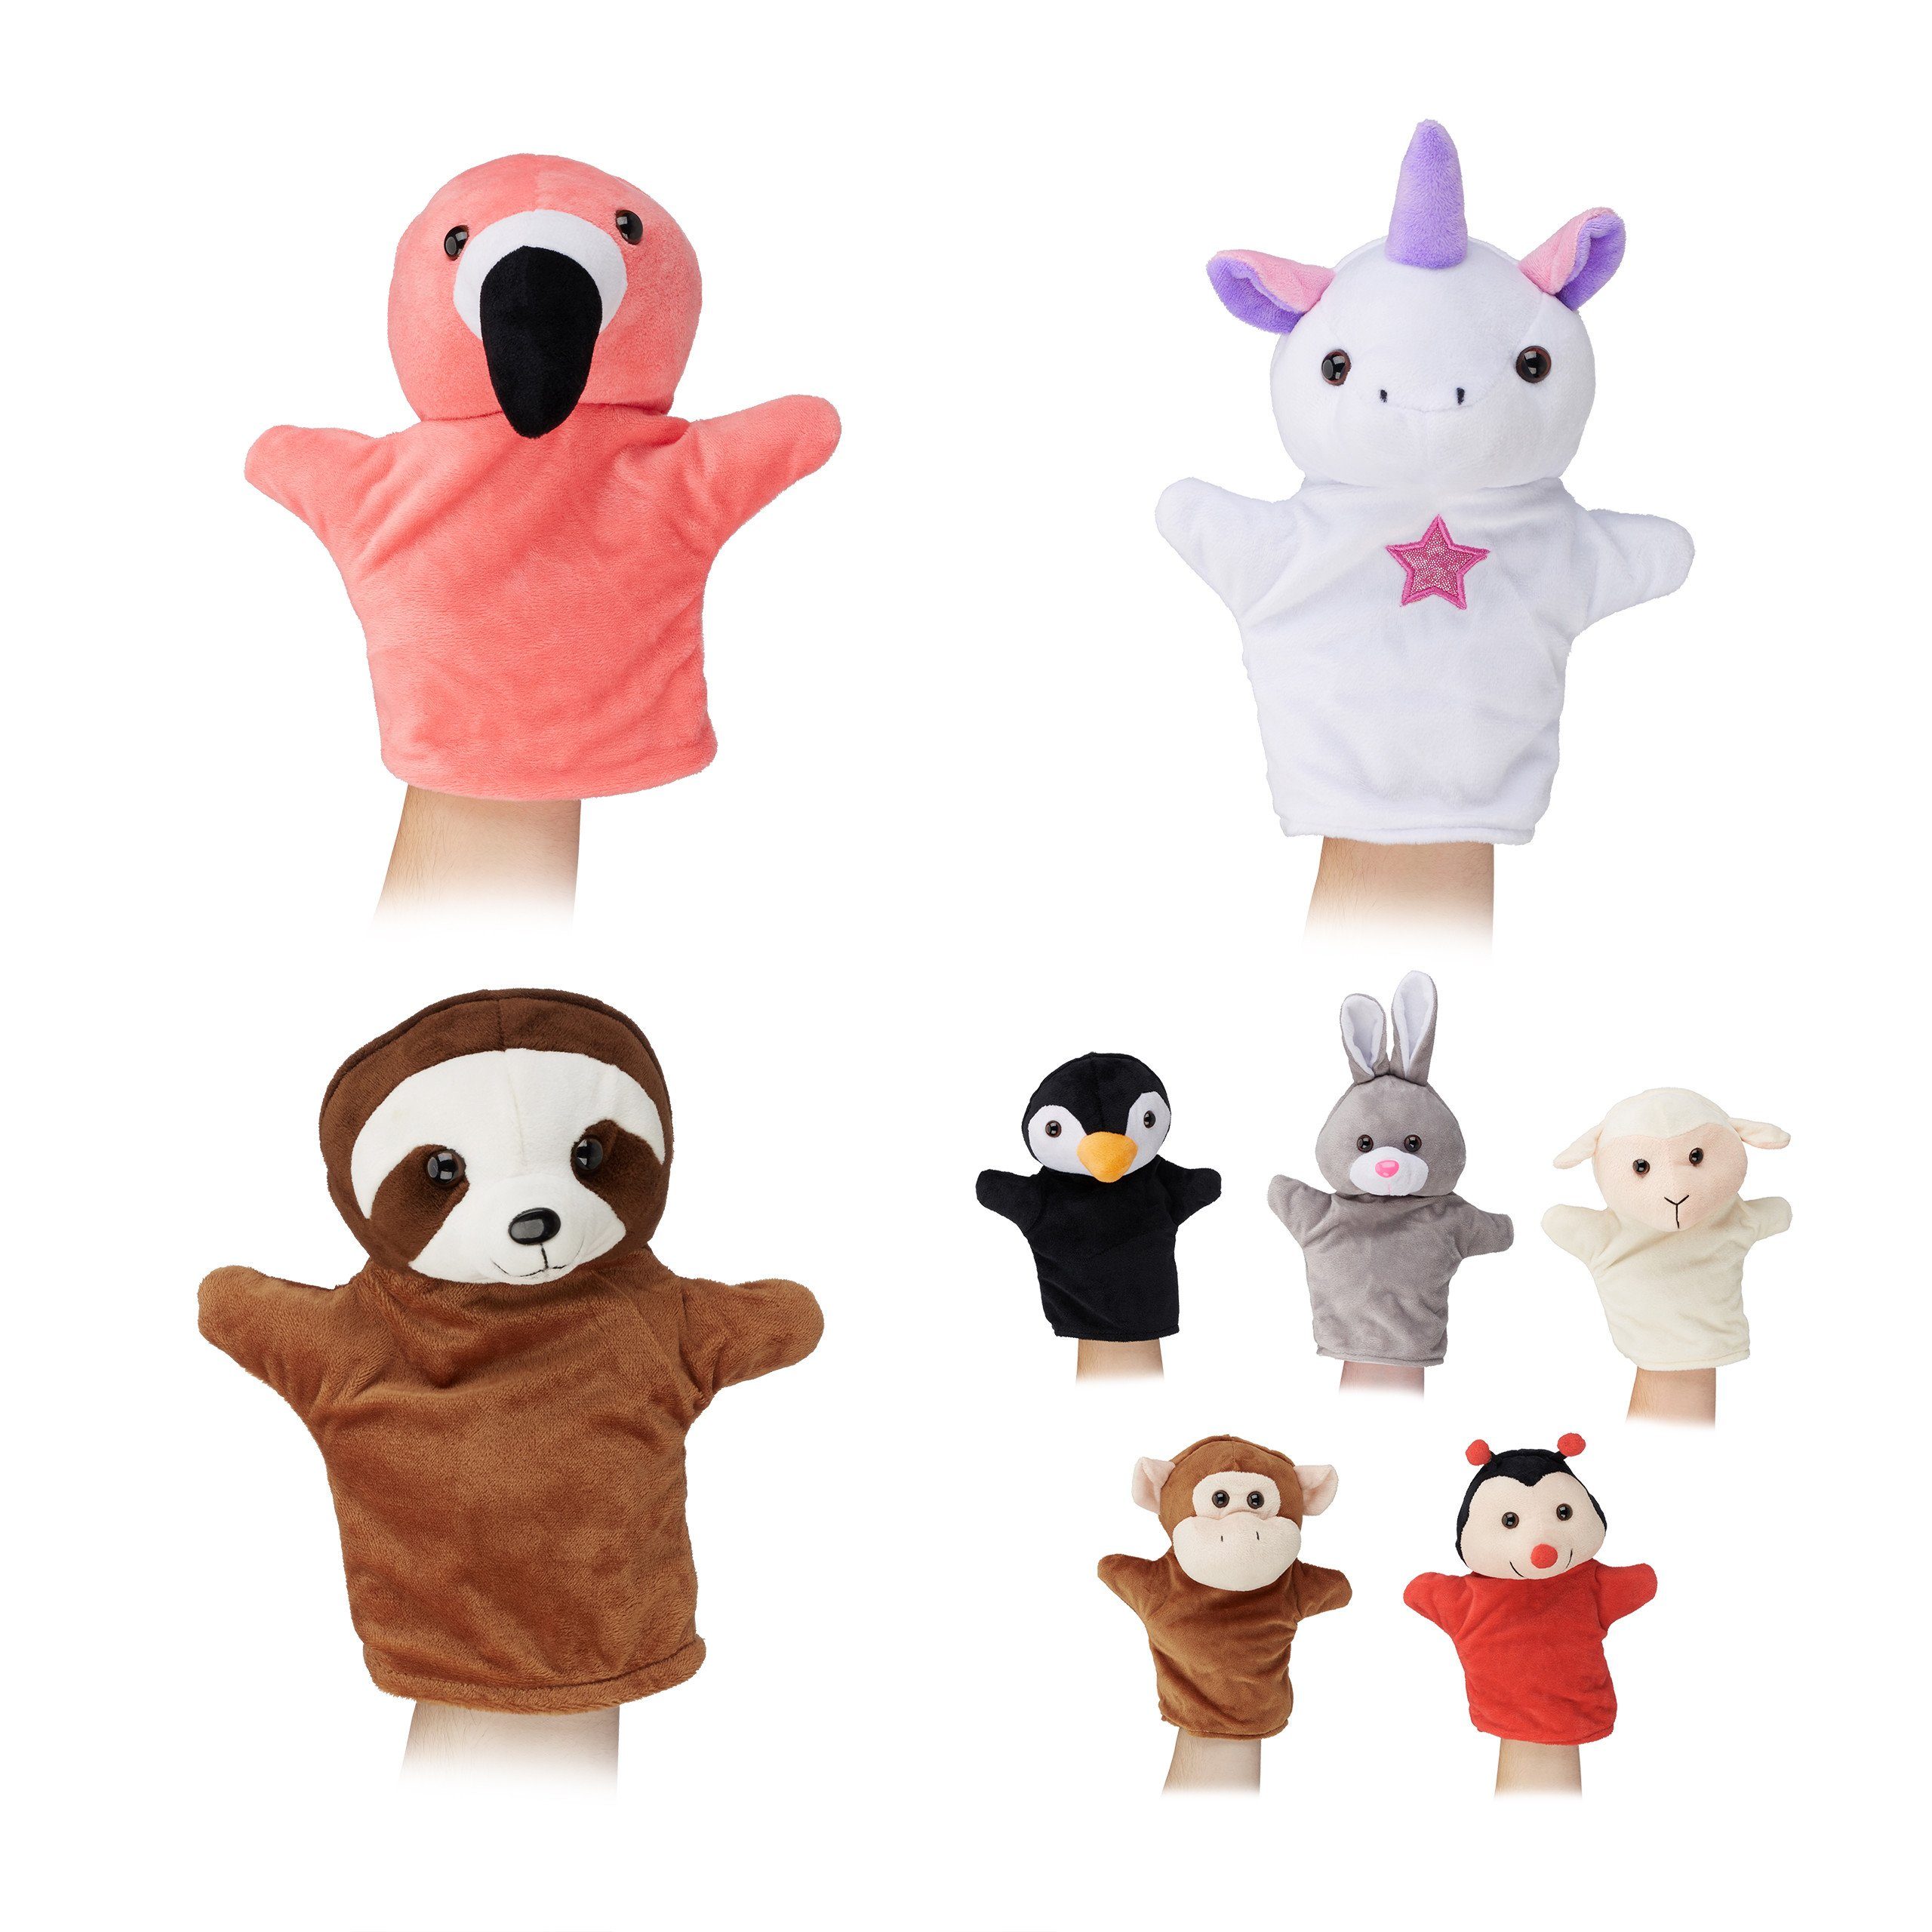 relaxdays Handpuppe »Handpuppen Tier-Set für Kinder« online kaufen | OTTO